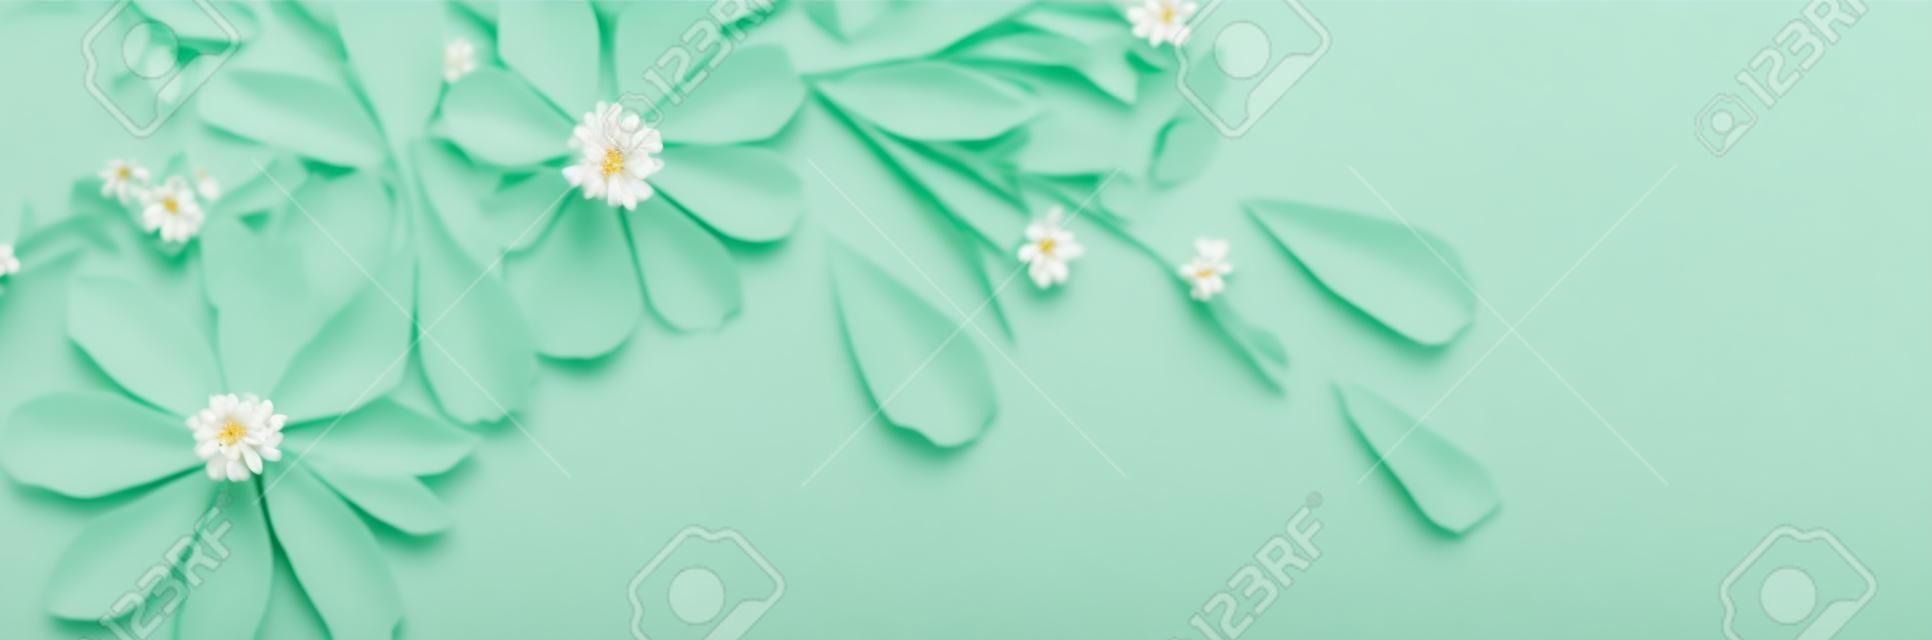 fleurs blanches sur fond de papier vert